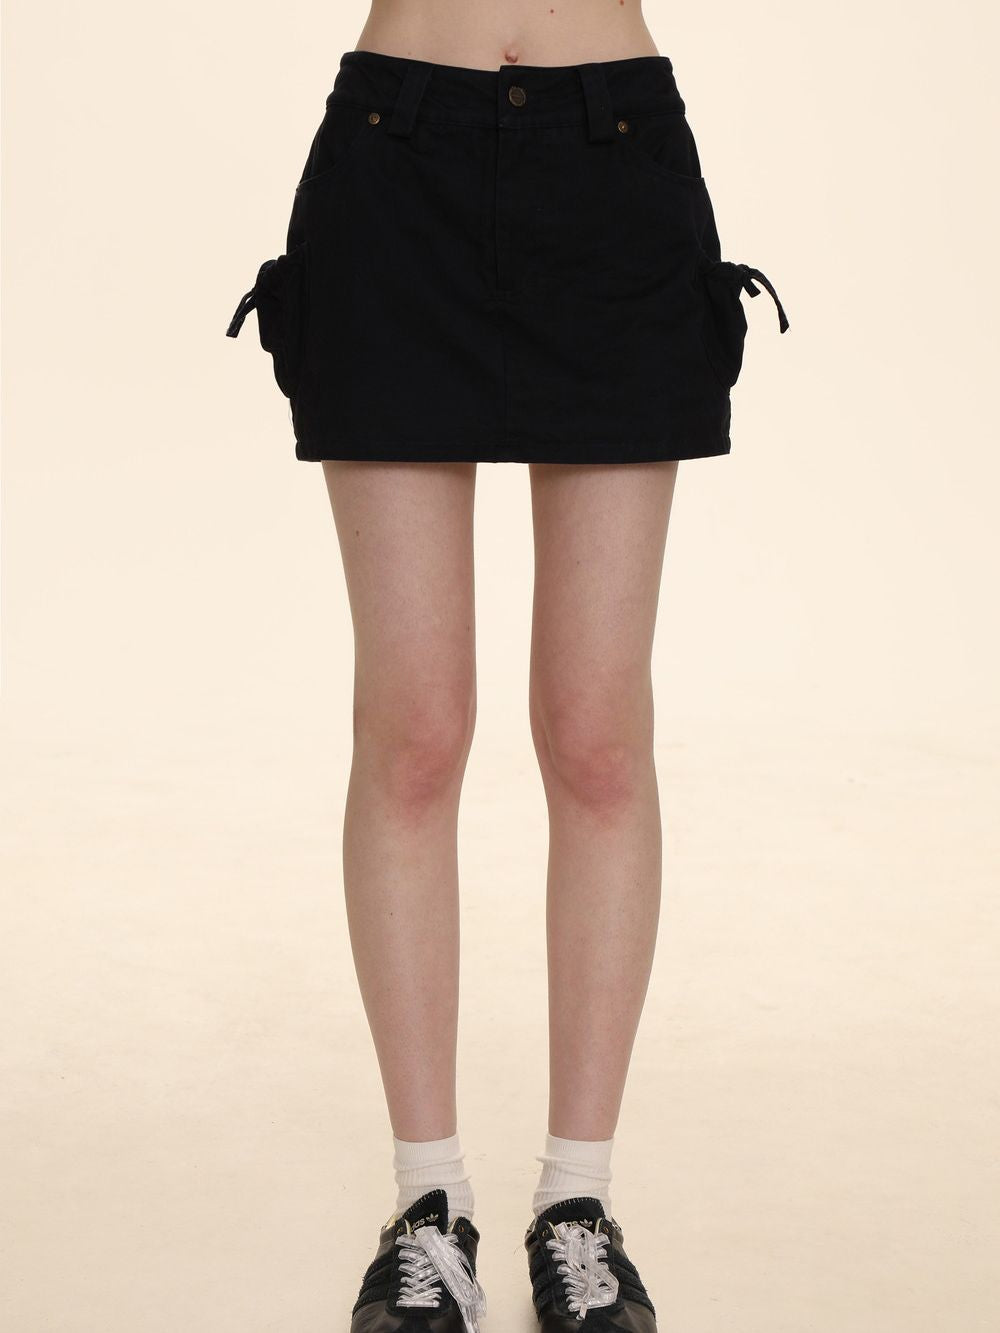 Micro-Mini Drawstring Tight Skirt - chiclara